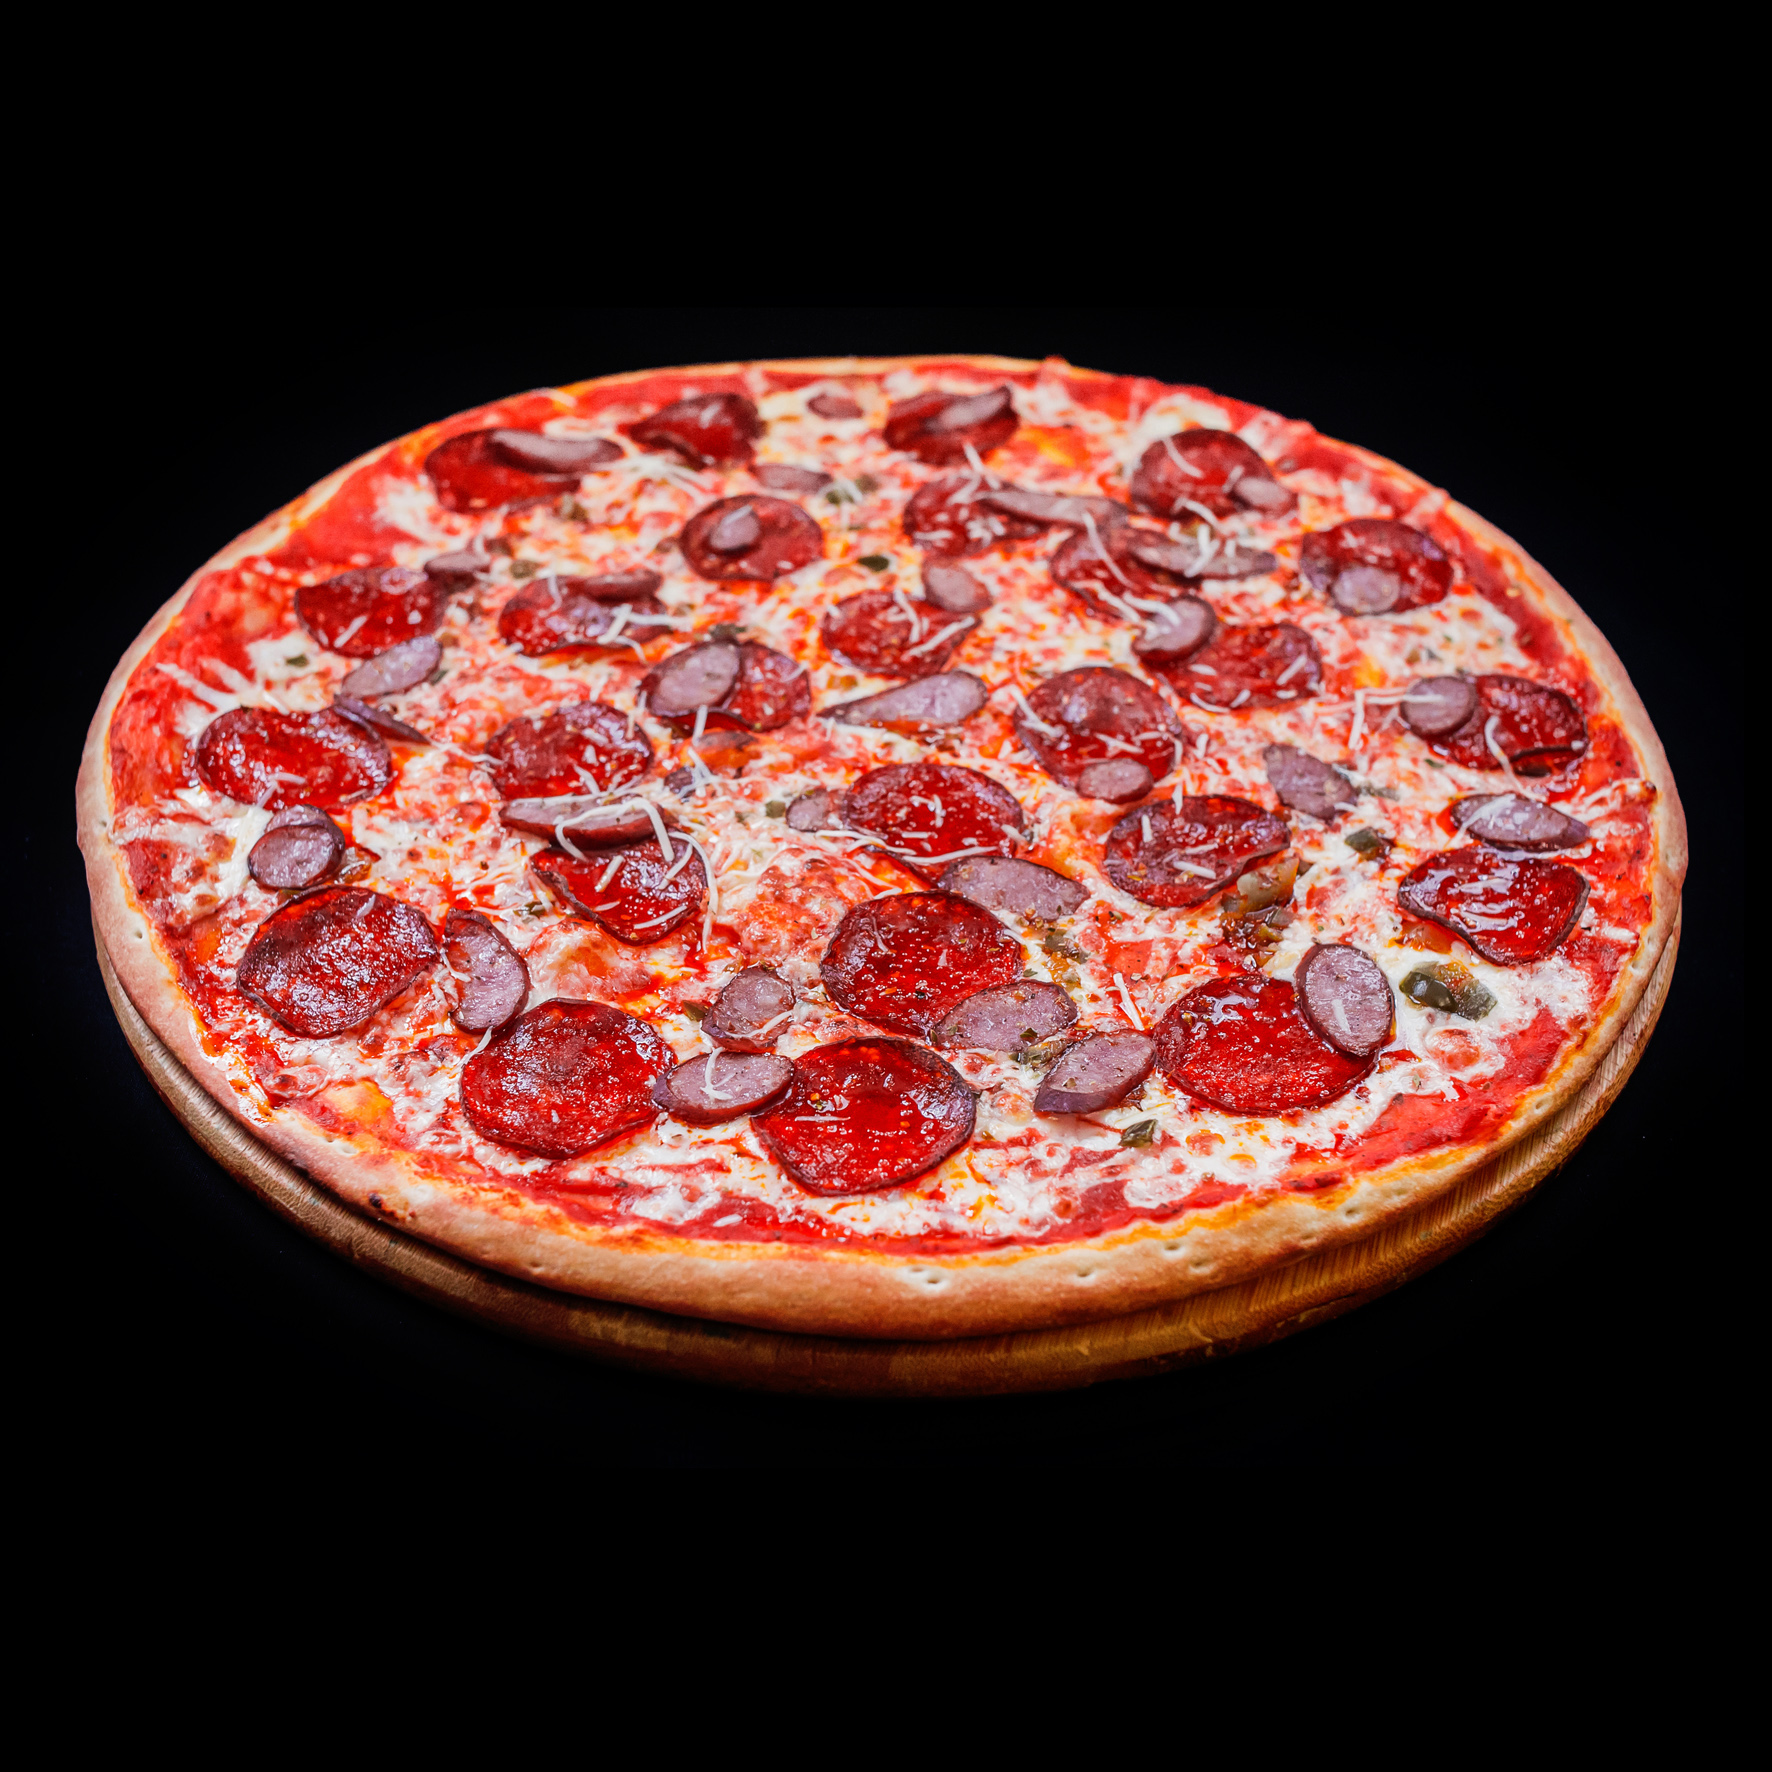 рейтинг лучшая доставка пиццы в москве фото 51